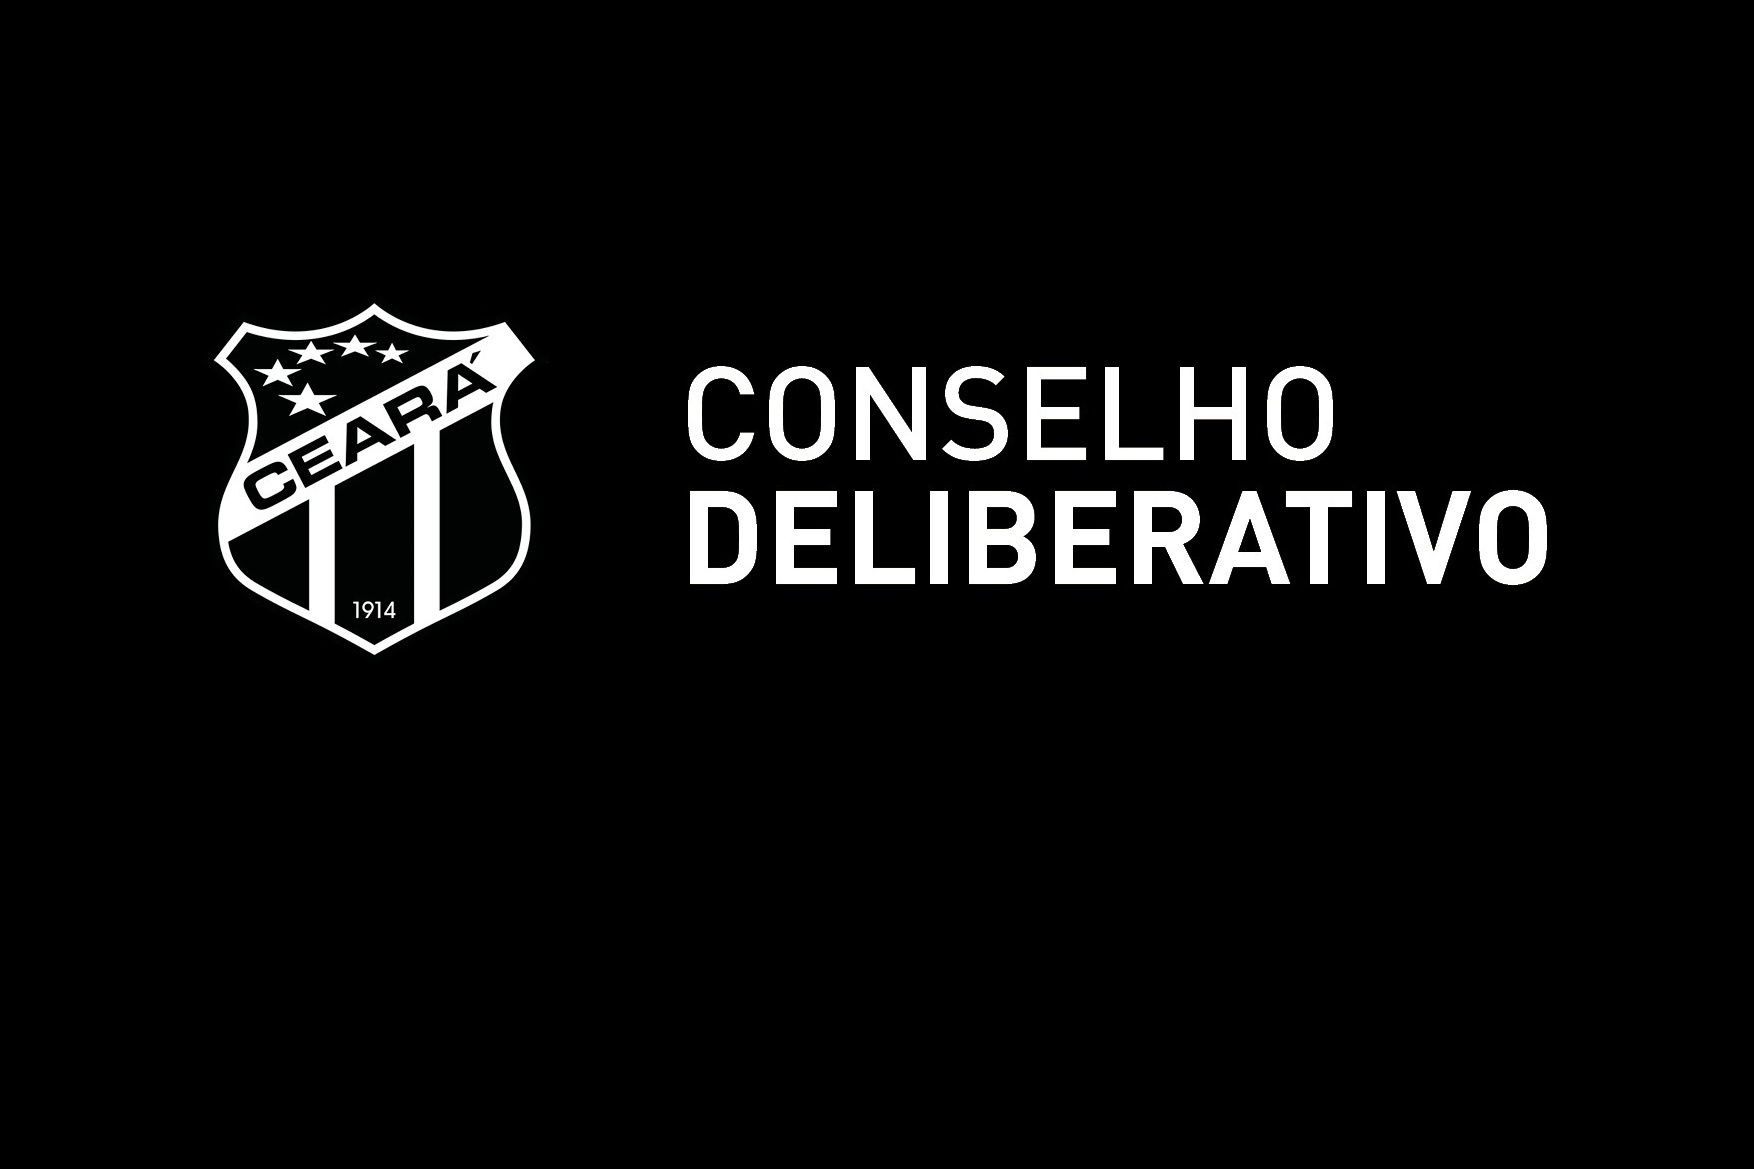 Perguntas frequentes sobre as eleições do Conselho Deliberativo do Ceará SC